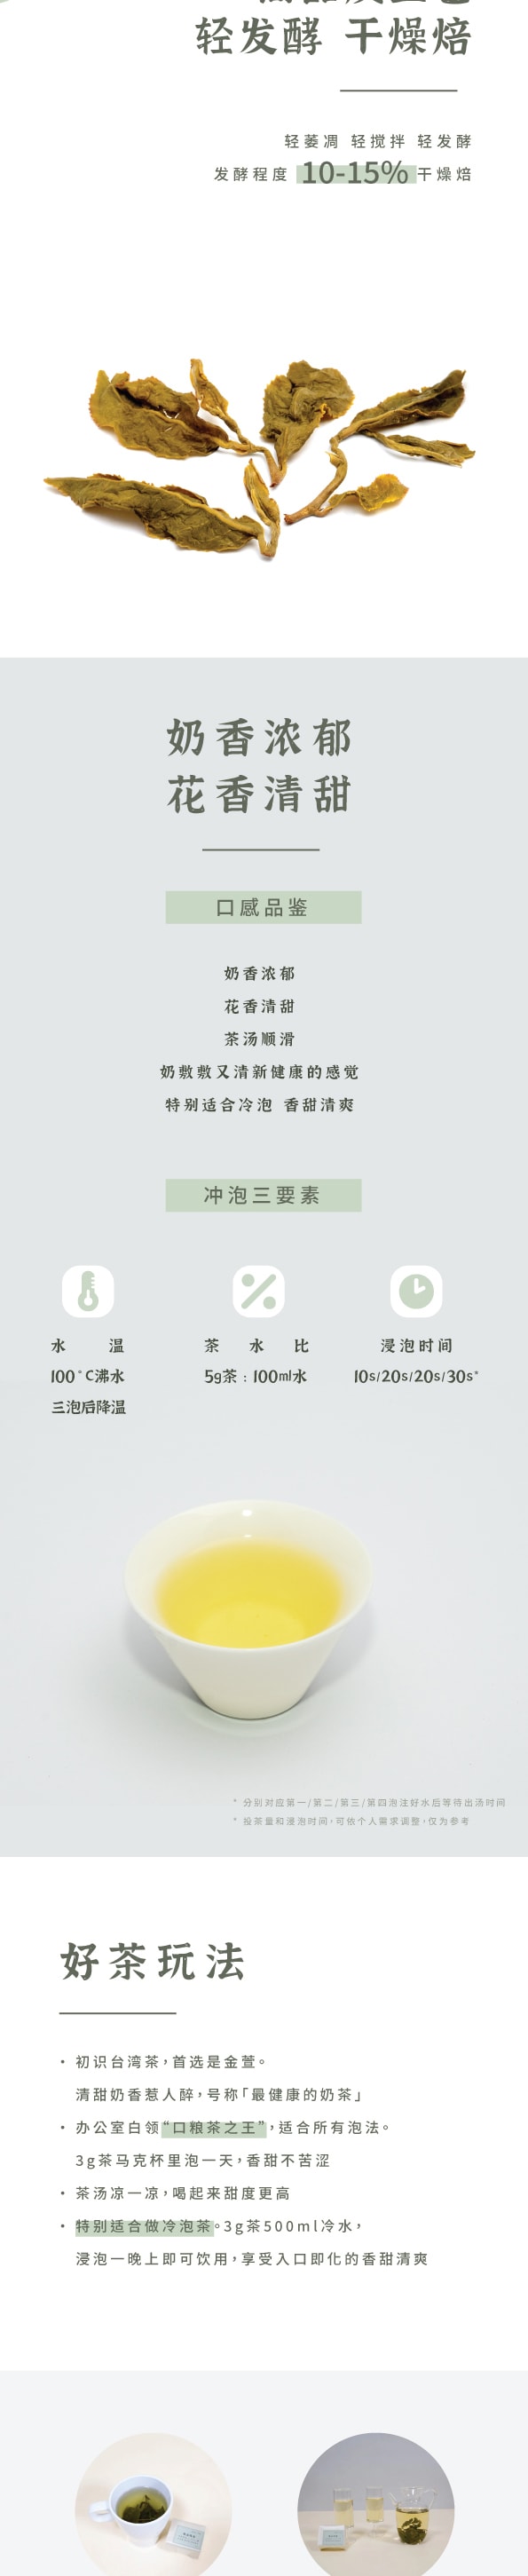 ZhaoTea 台灣烏龍茶金萱 清甜奶香 口感順滑 大受歡迎的台灣烏龍茶 茶葉 烏龍茶 60g